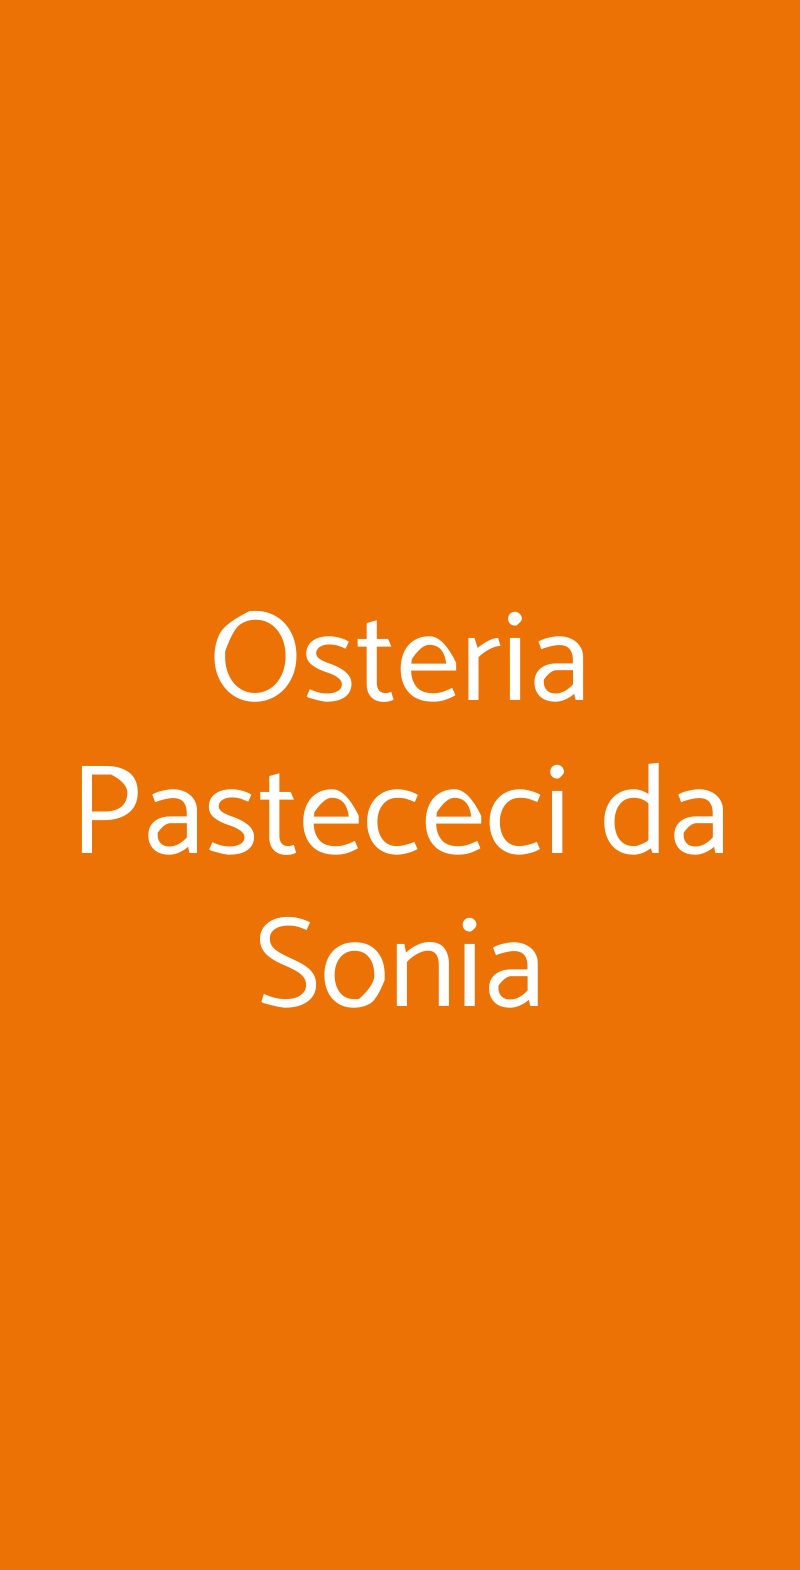 Osteria Pastececi da Sonia Castellina in Chianti menù 1 pagina